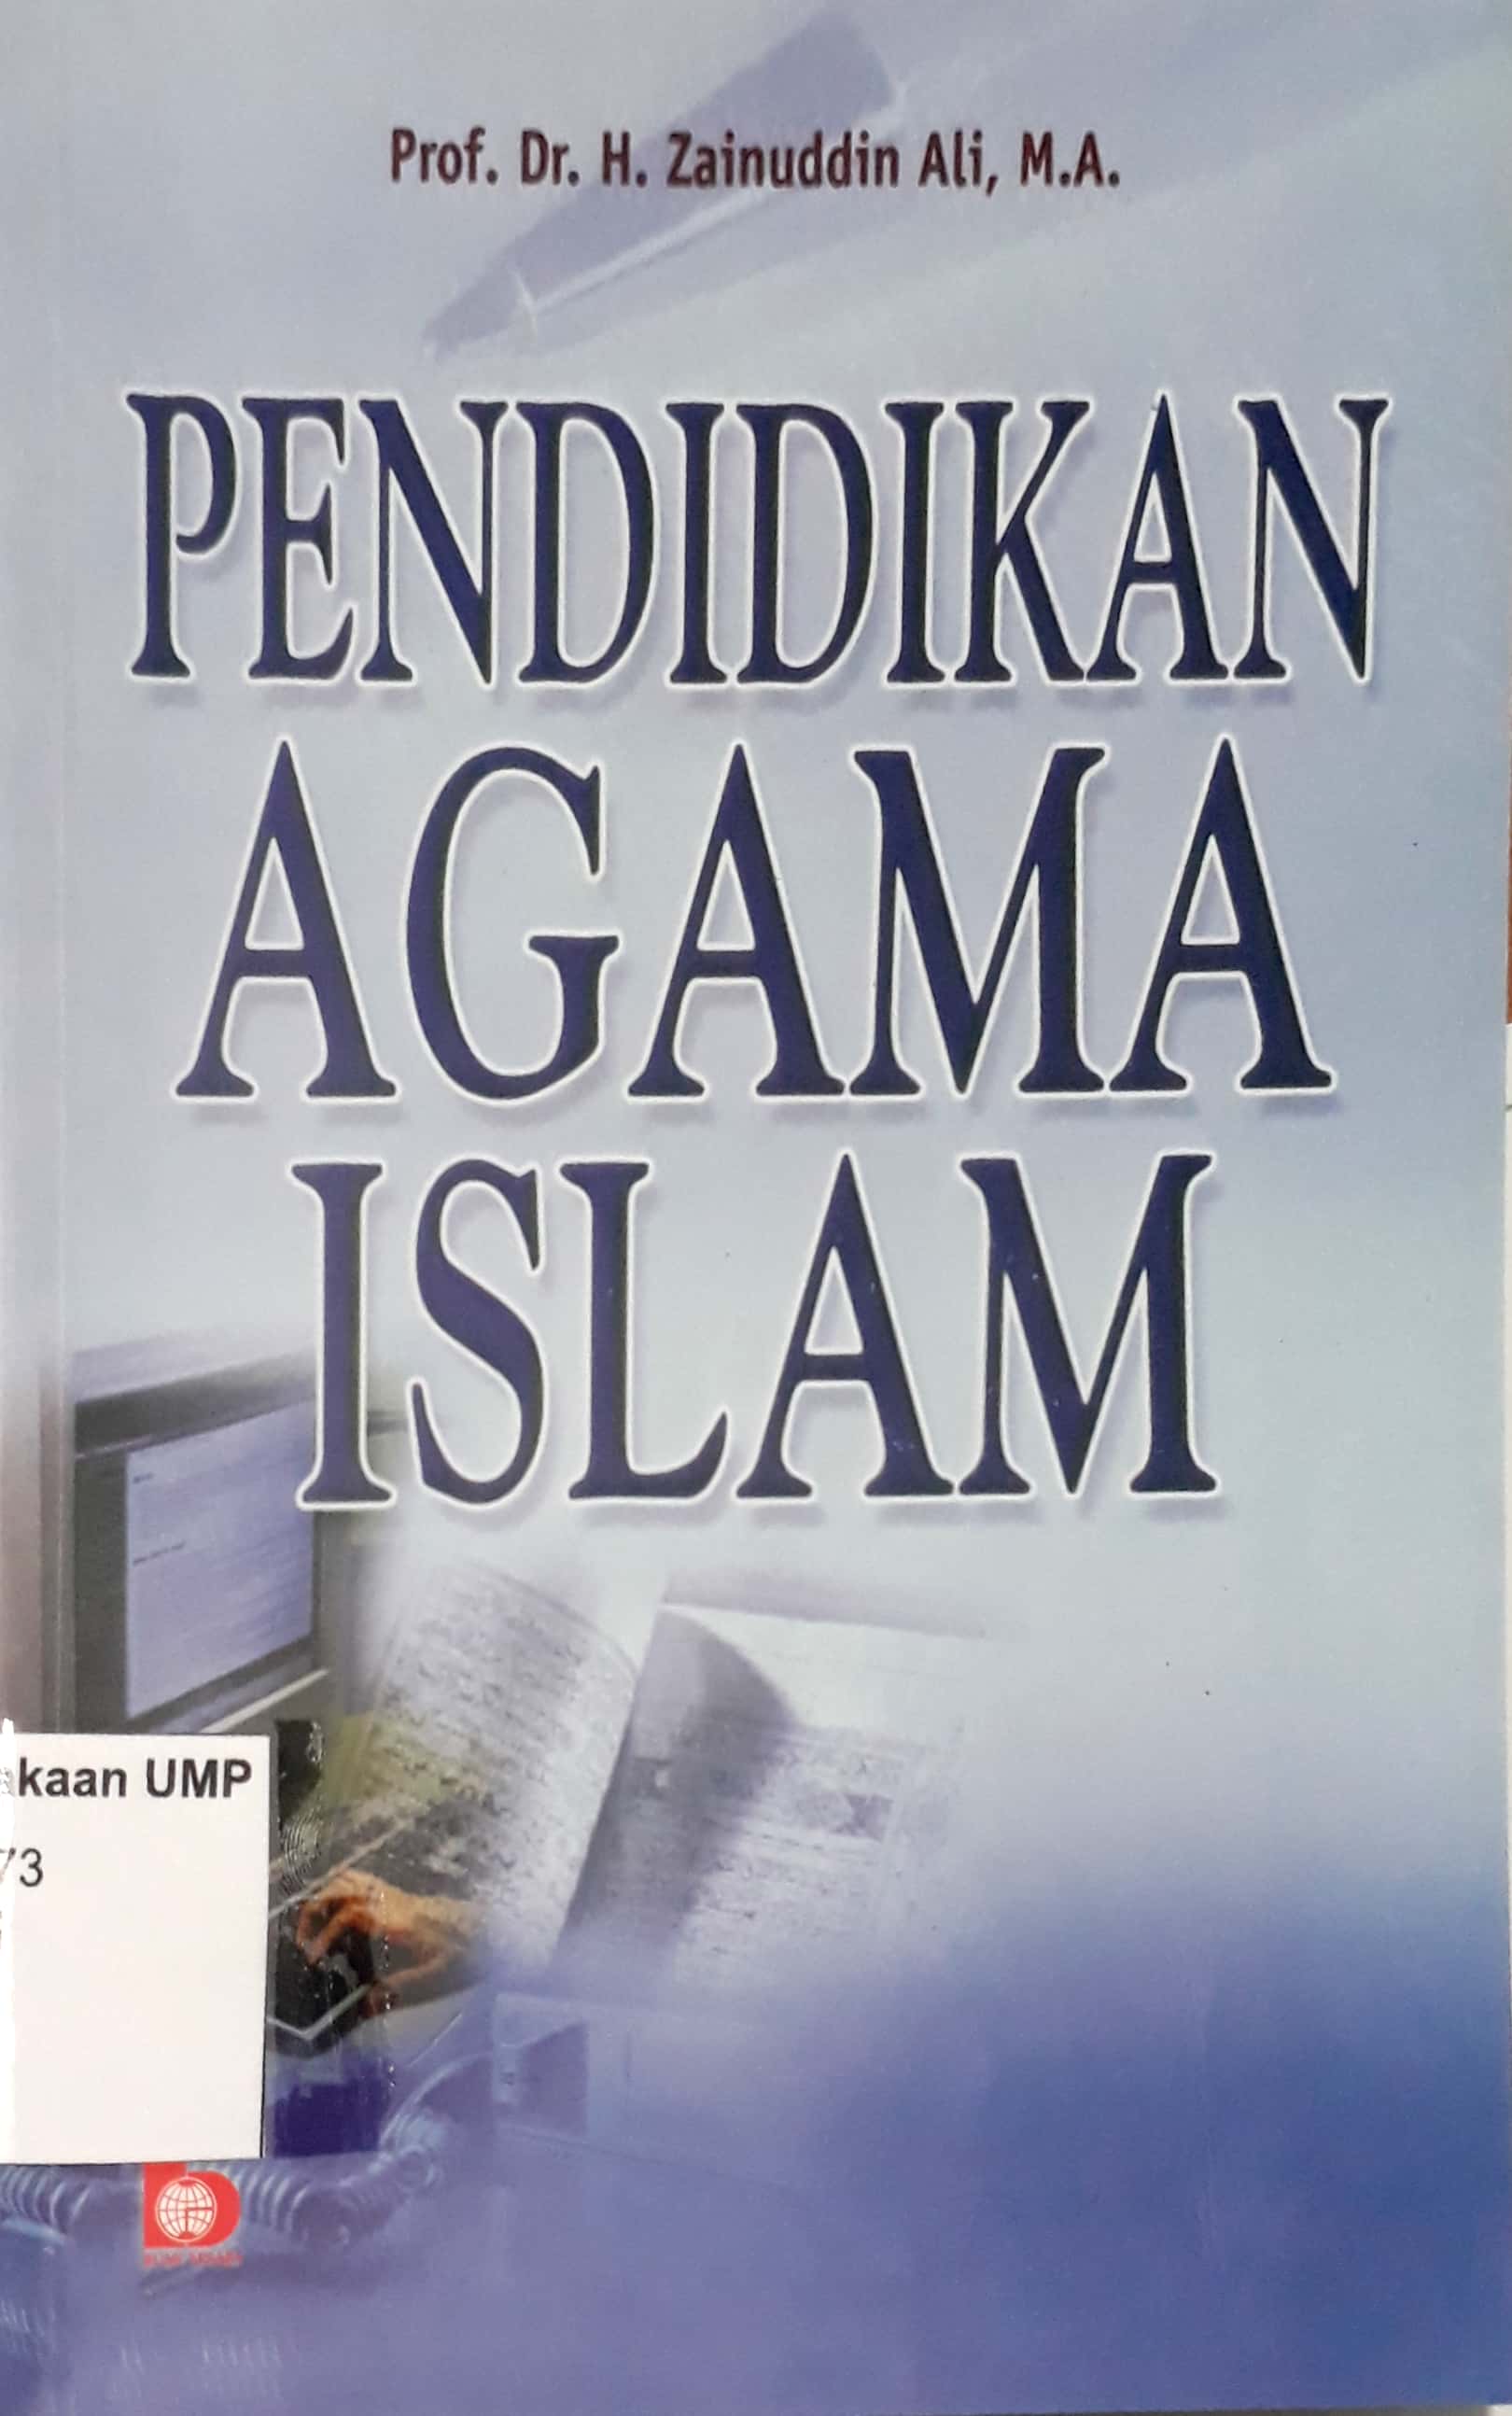 Pendidikan Agama Islam